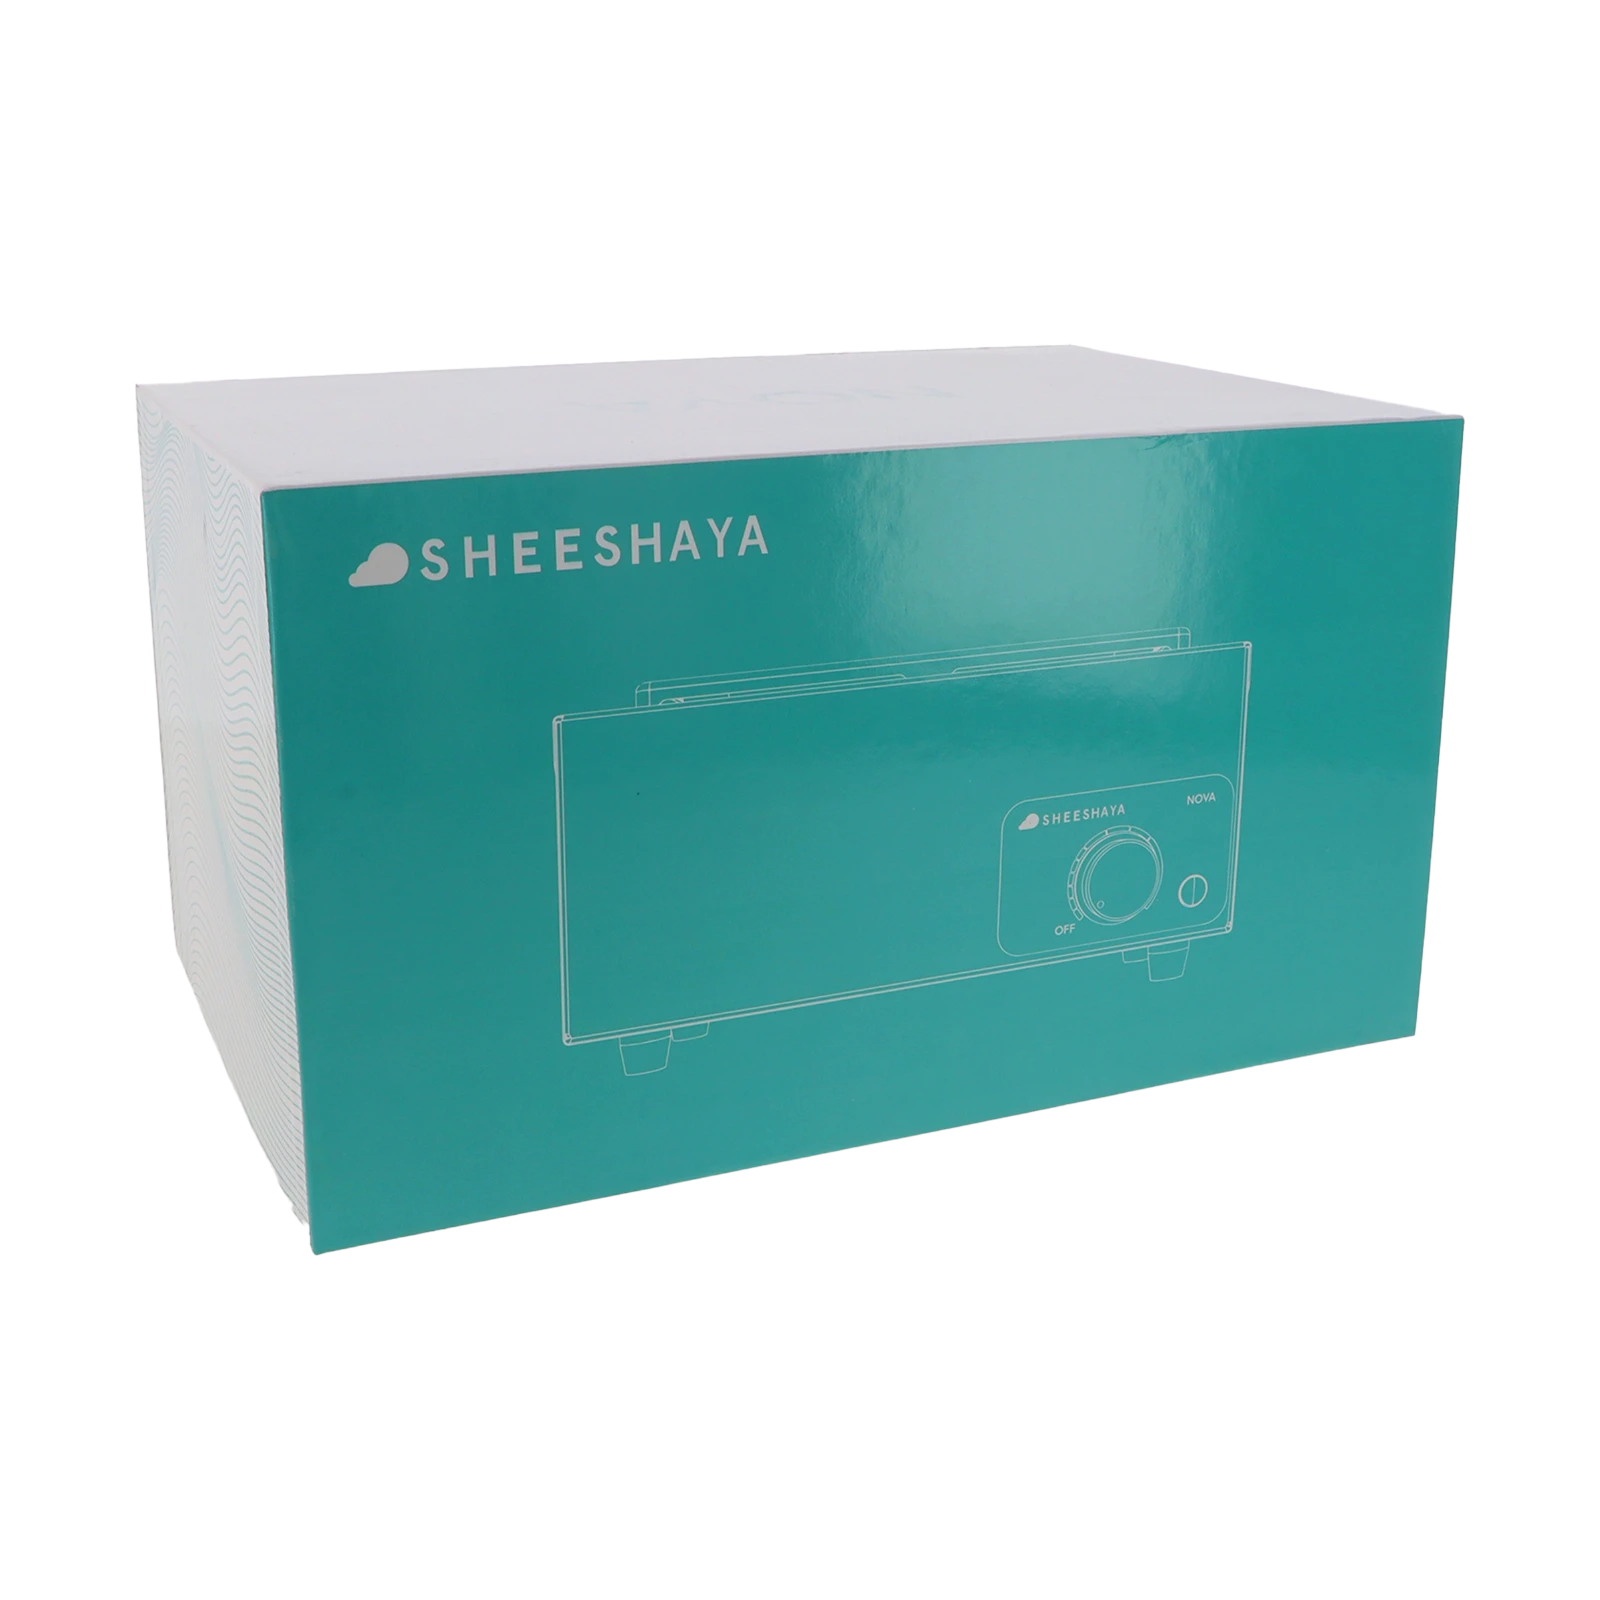 Sheeshaya - Nova - Coal Lighter - 600 W